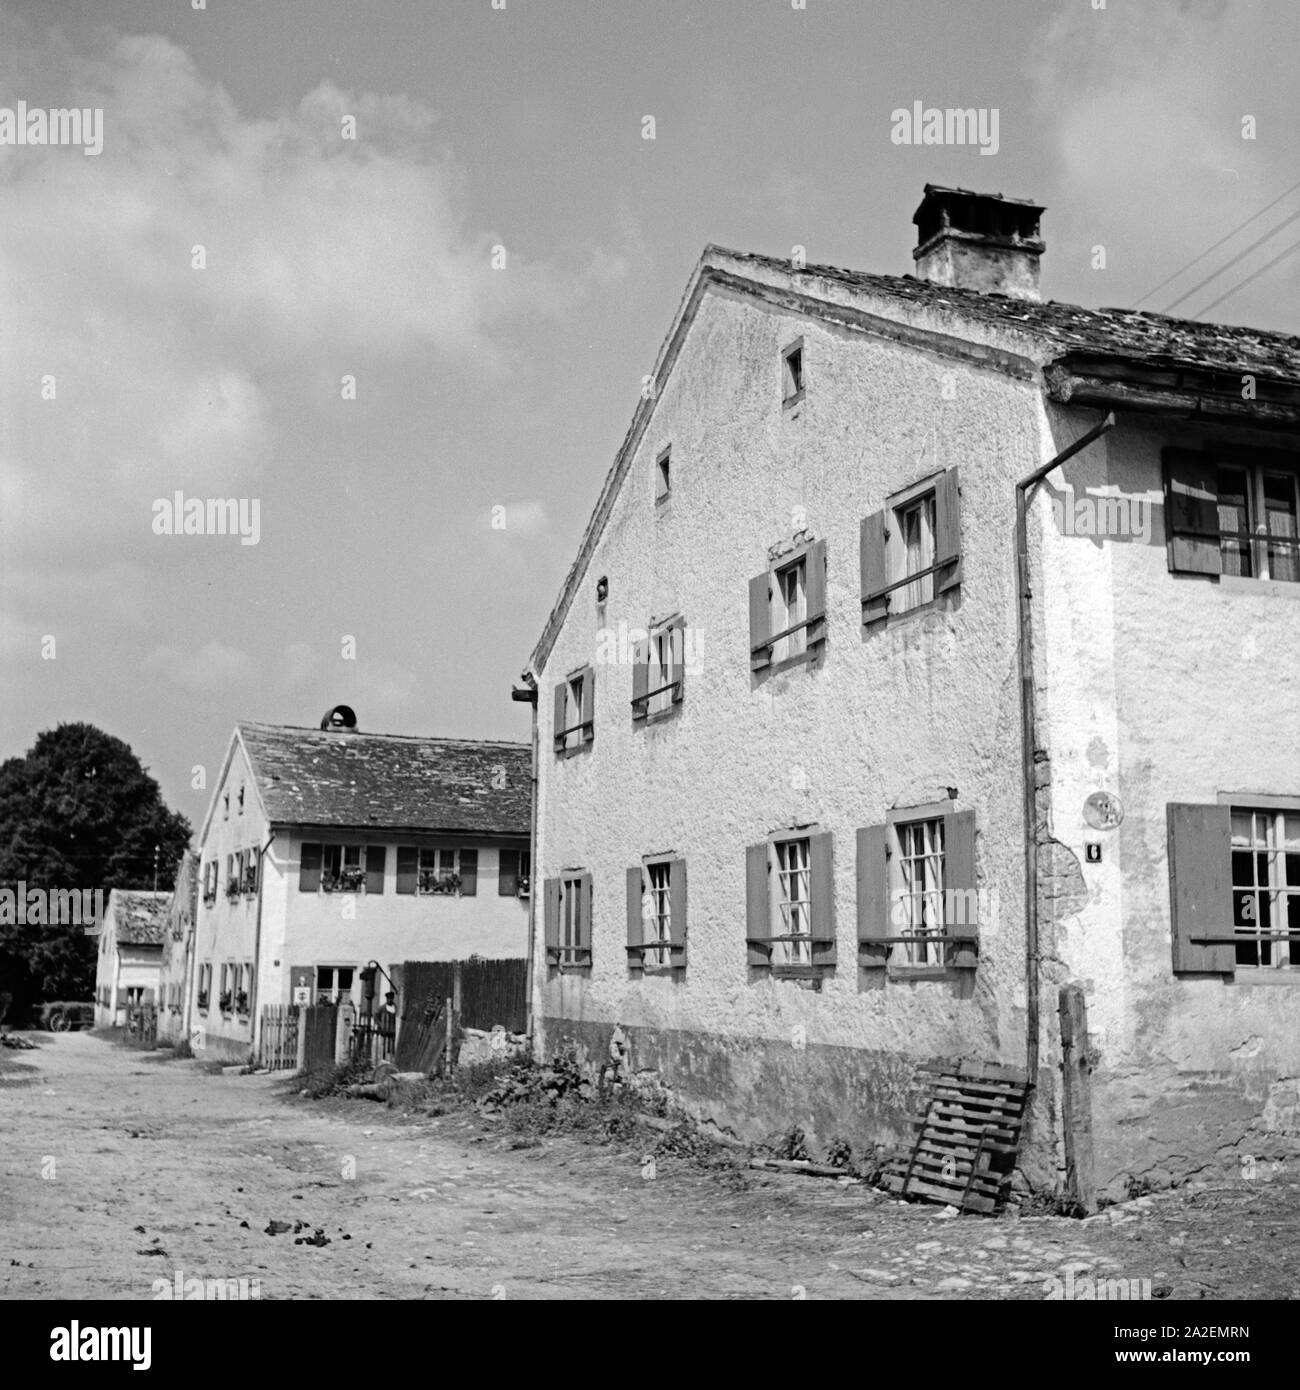 Gehöft in Weissenburg, Deutschland 1930er Jahre. Homestead at Weissenurg, Germany 1930s. Stock Photo